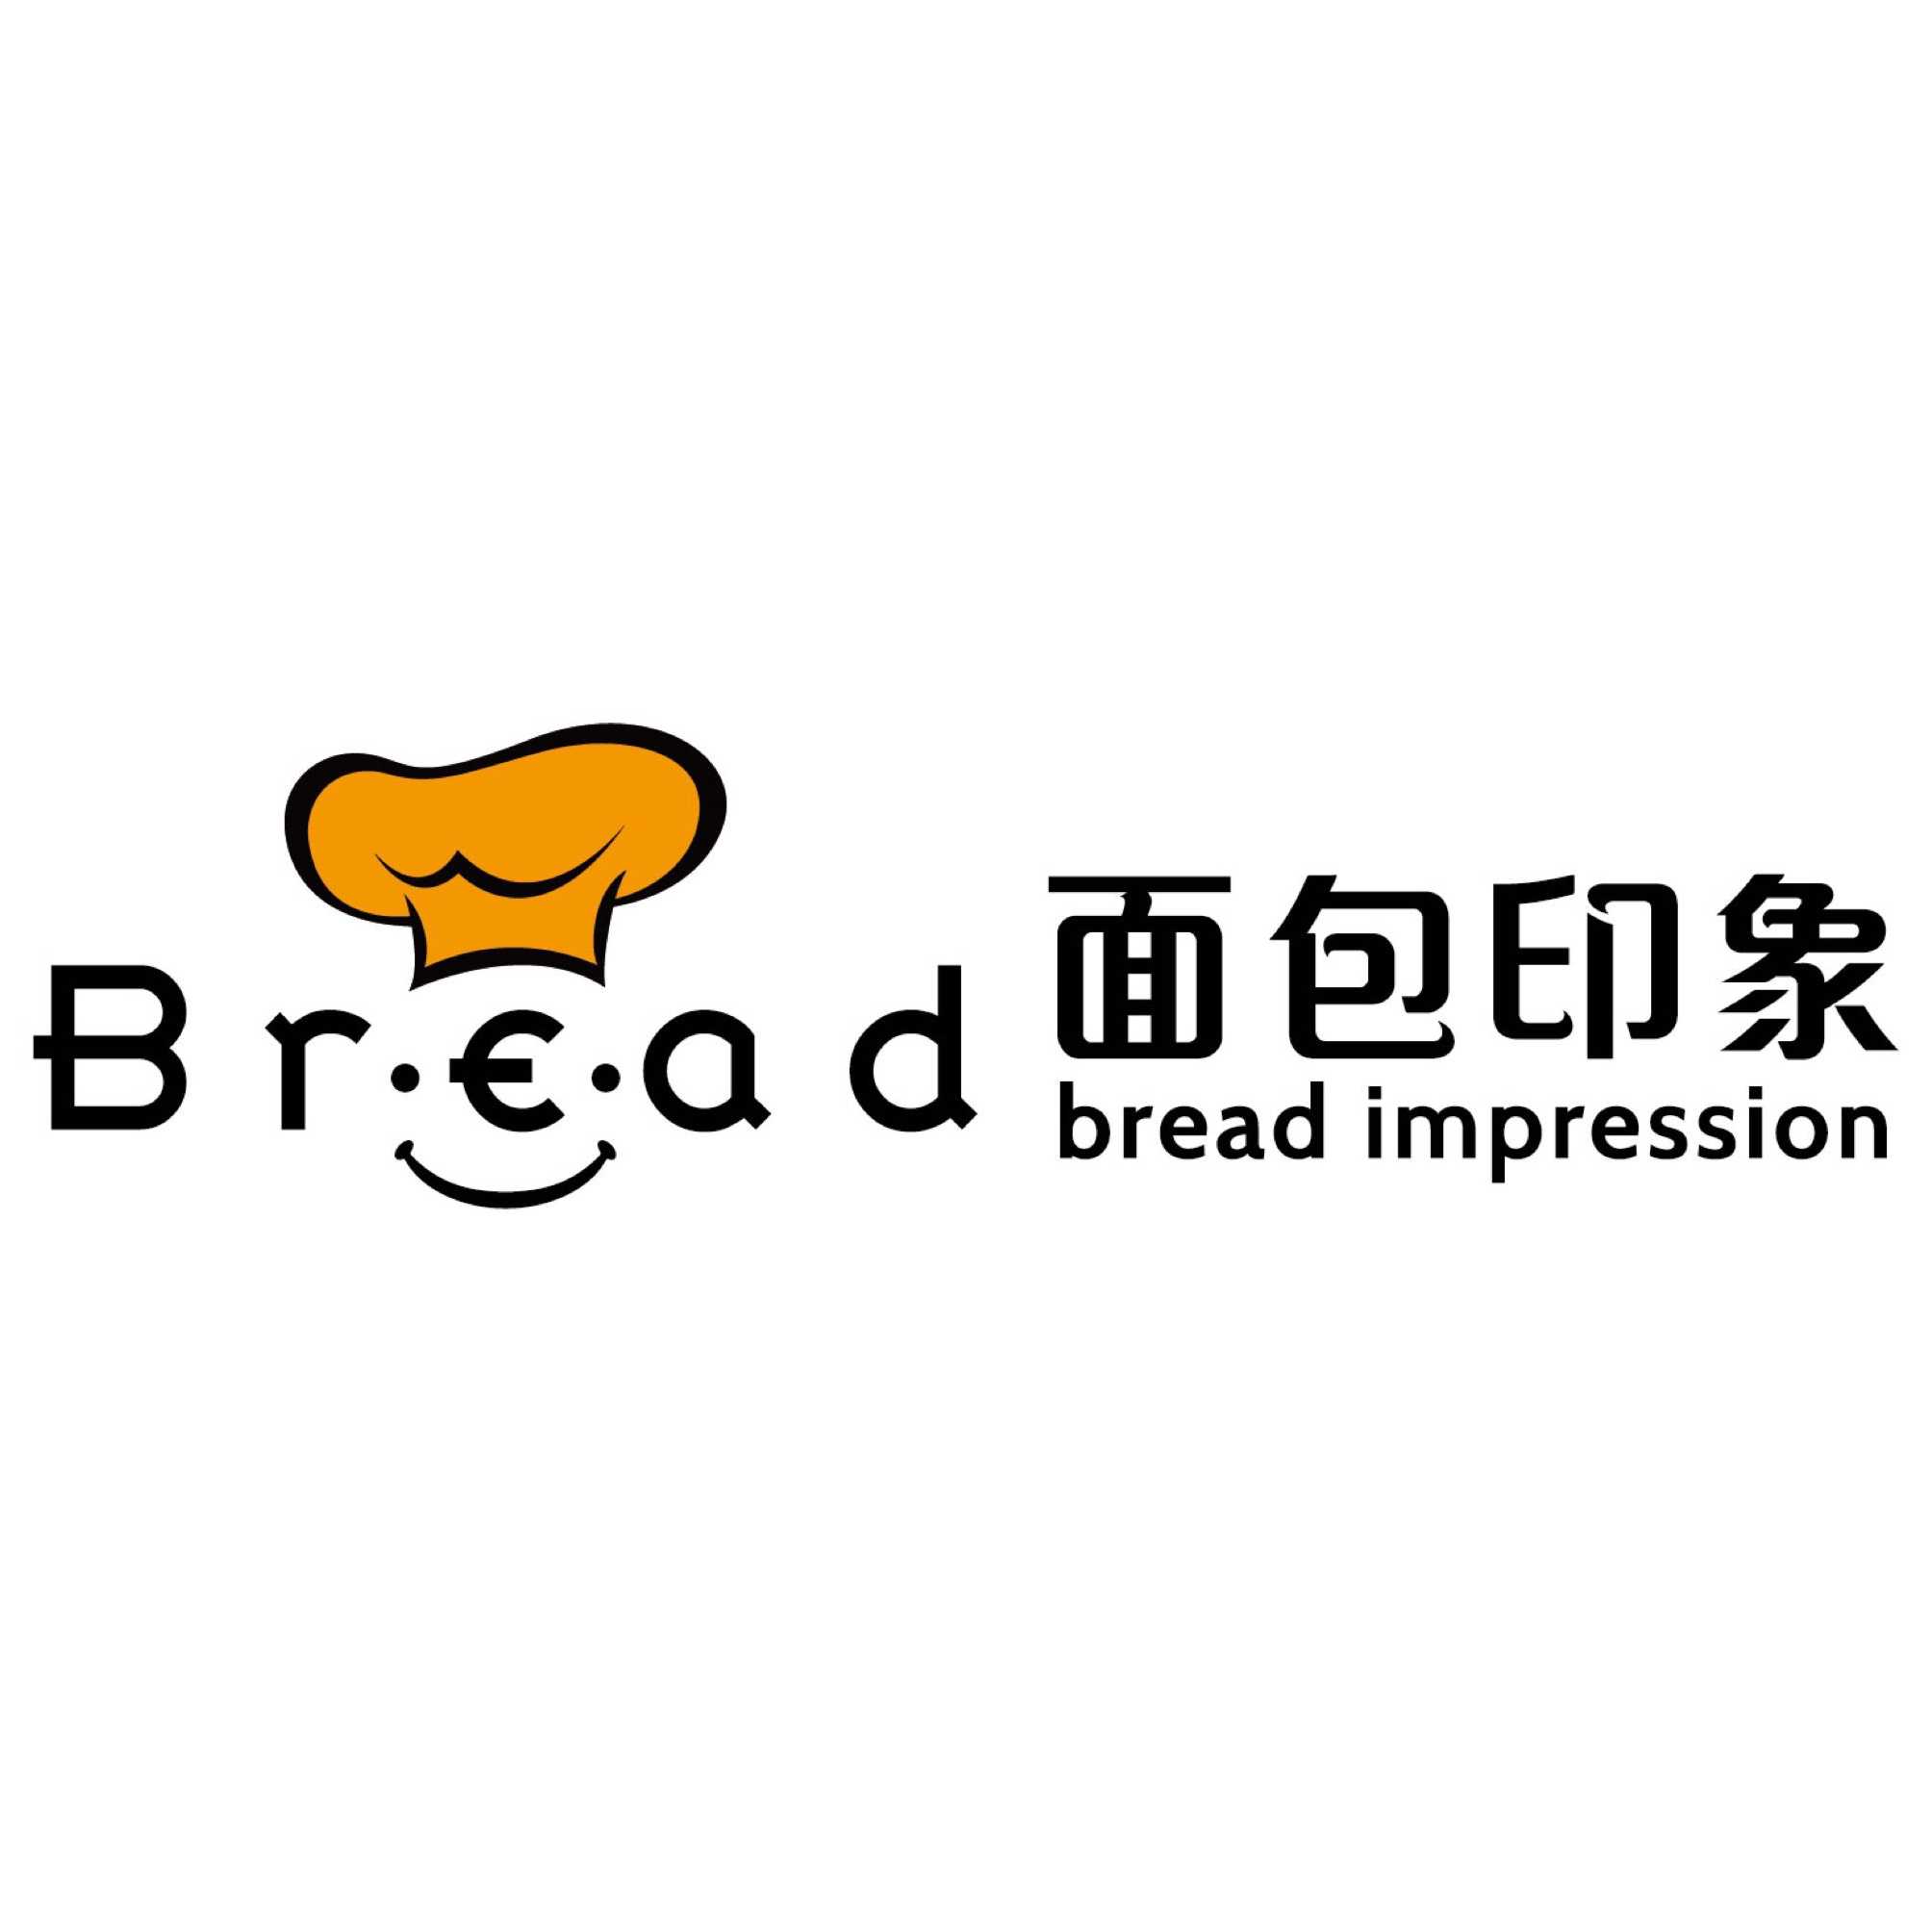 广州面包印象食品有限公司